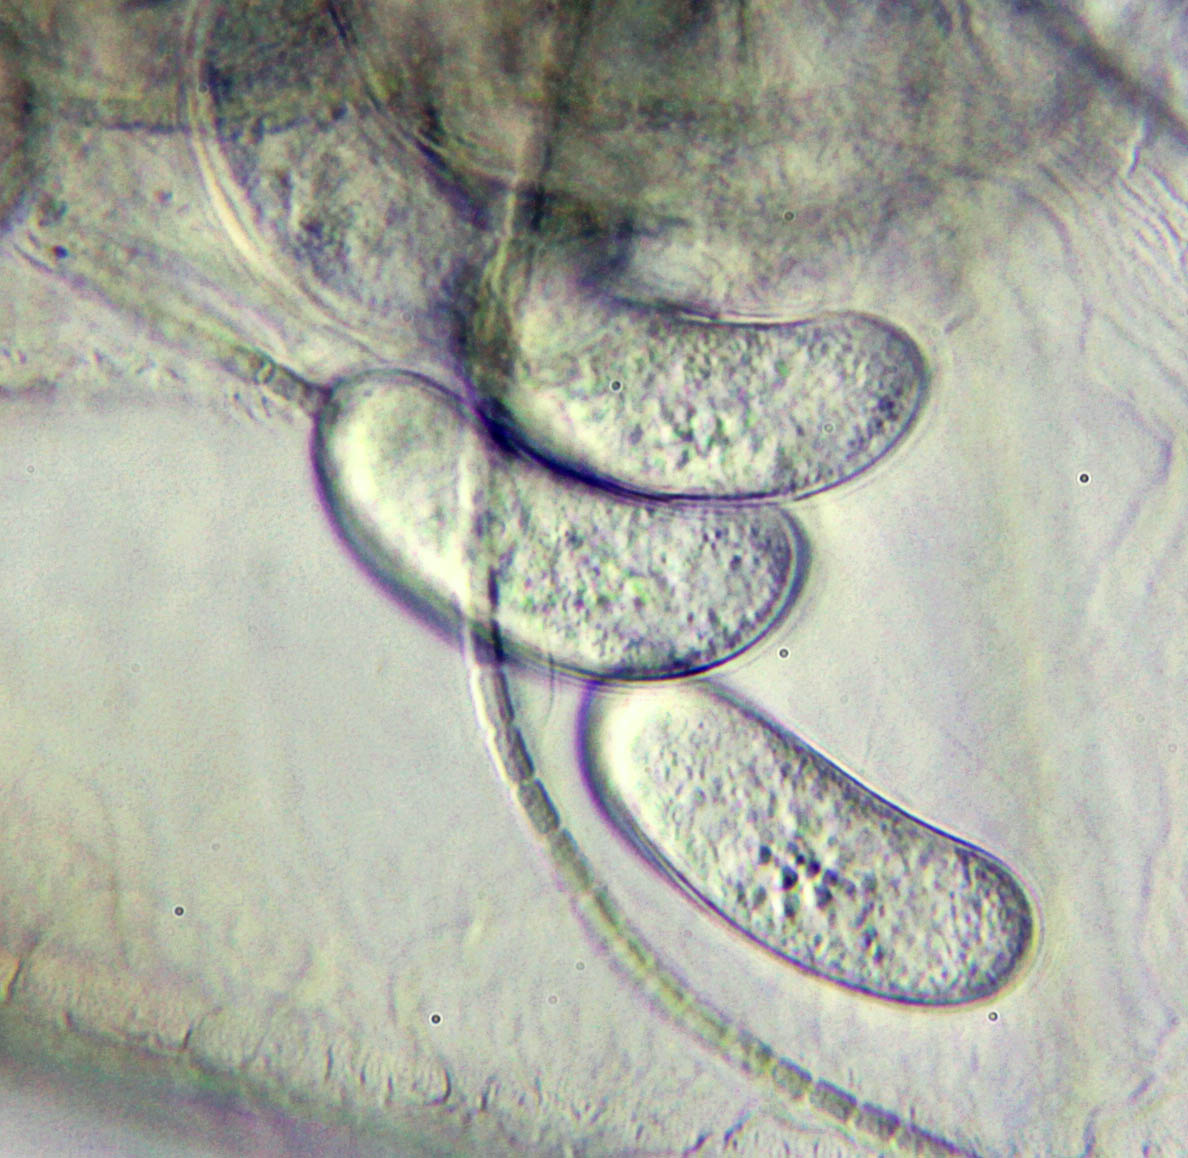 Coelosporidium chydoricola